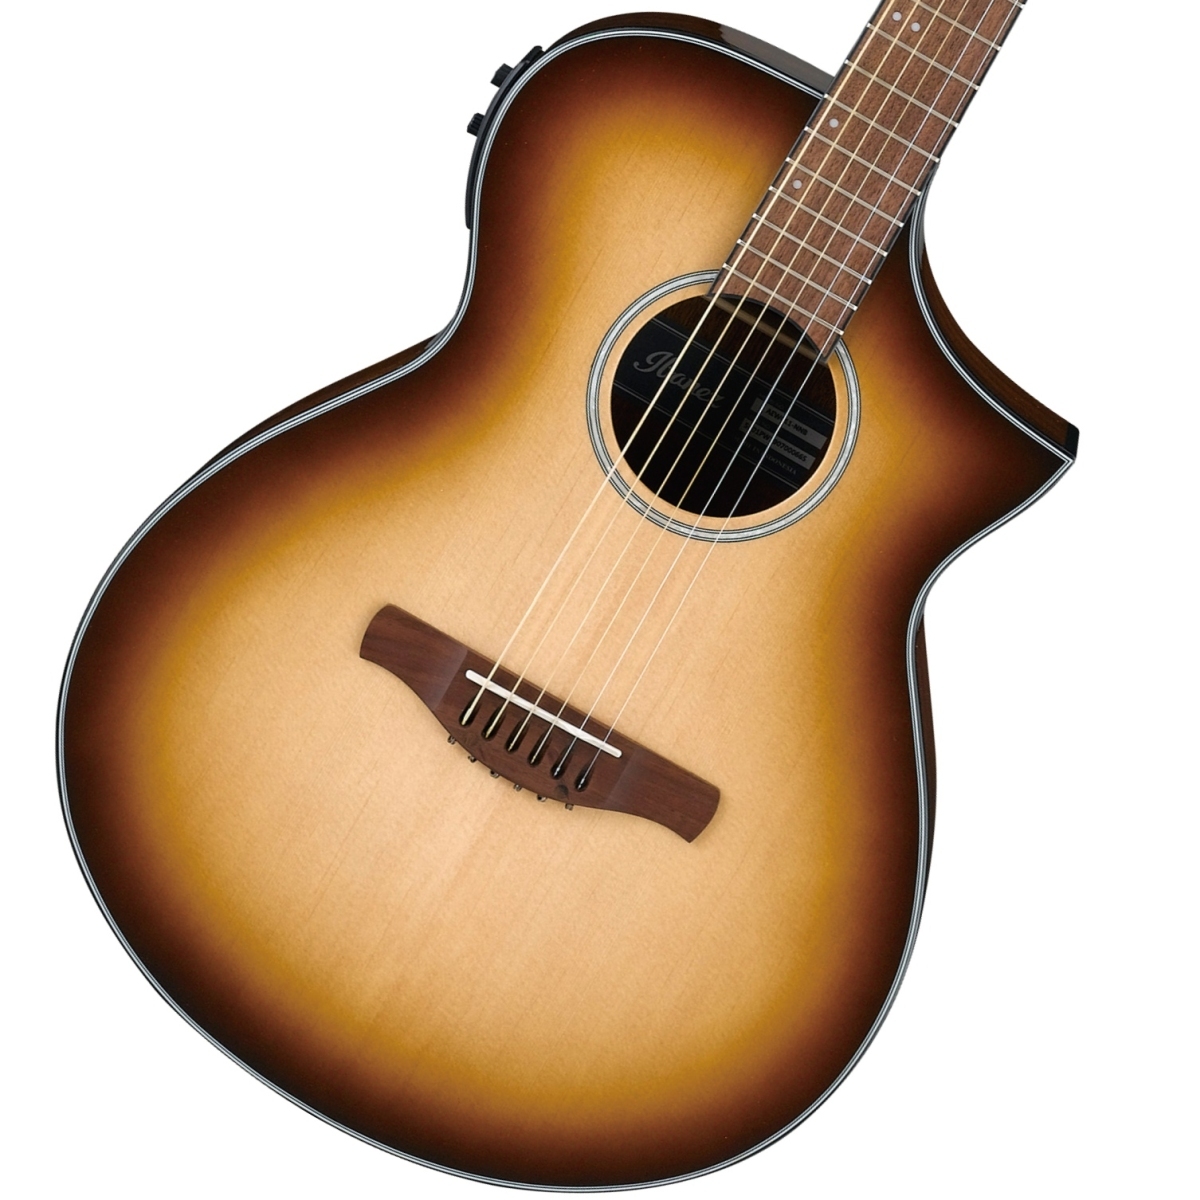 29500円 期間限定で特別価格 アイバニーズ アコースティックギター